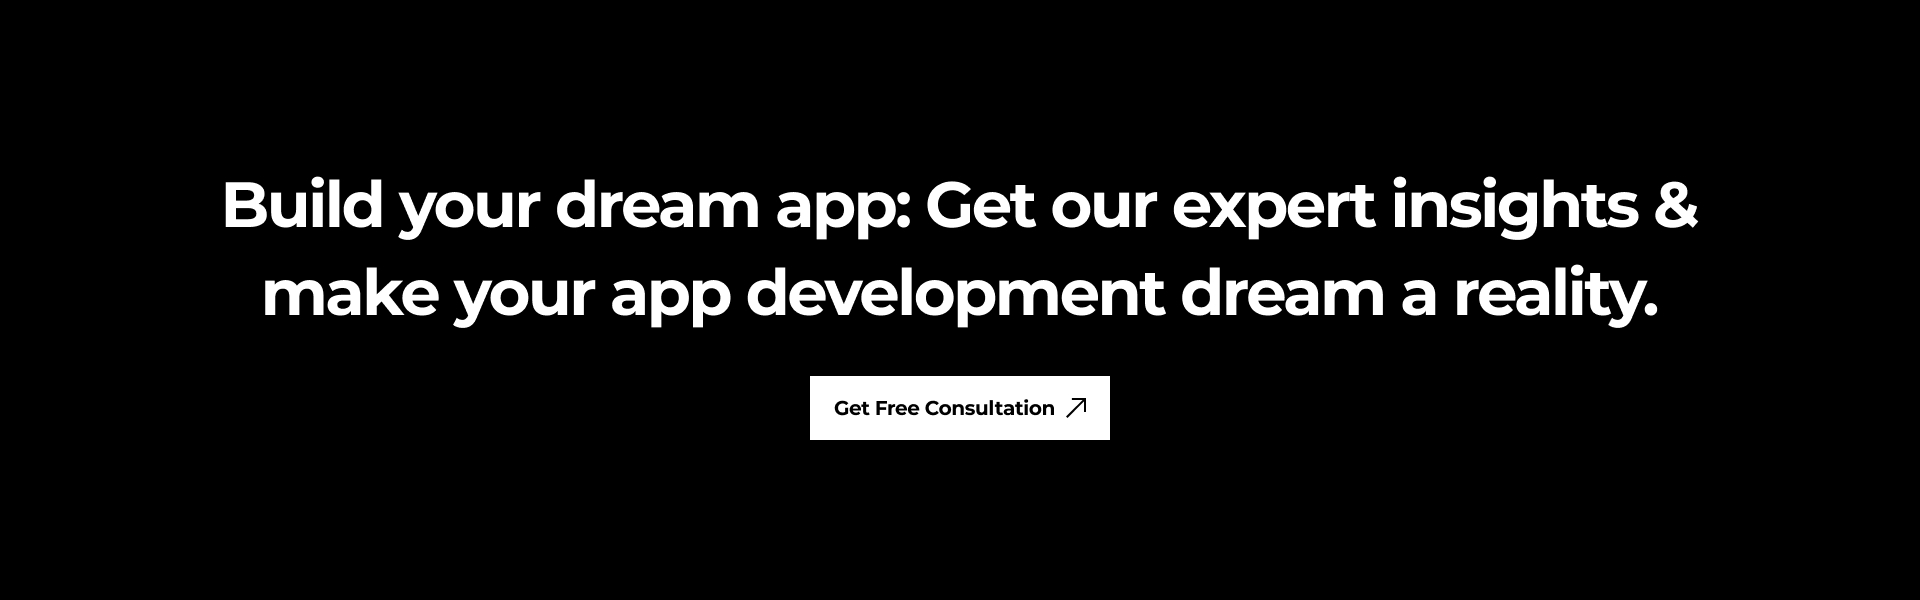 Build your dream app